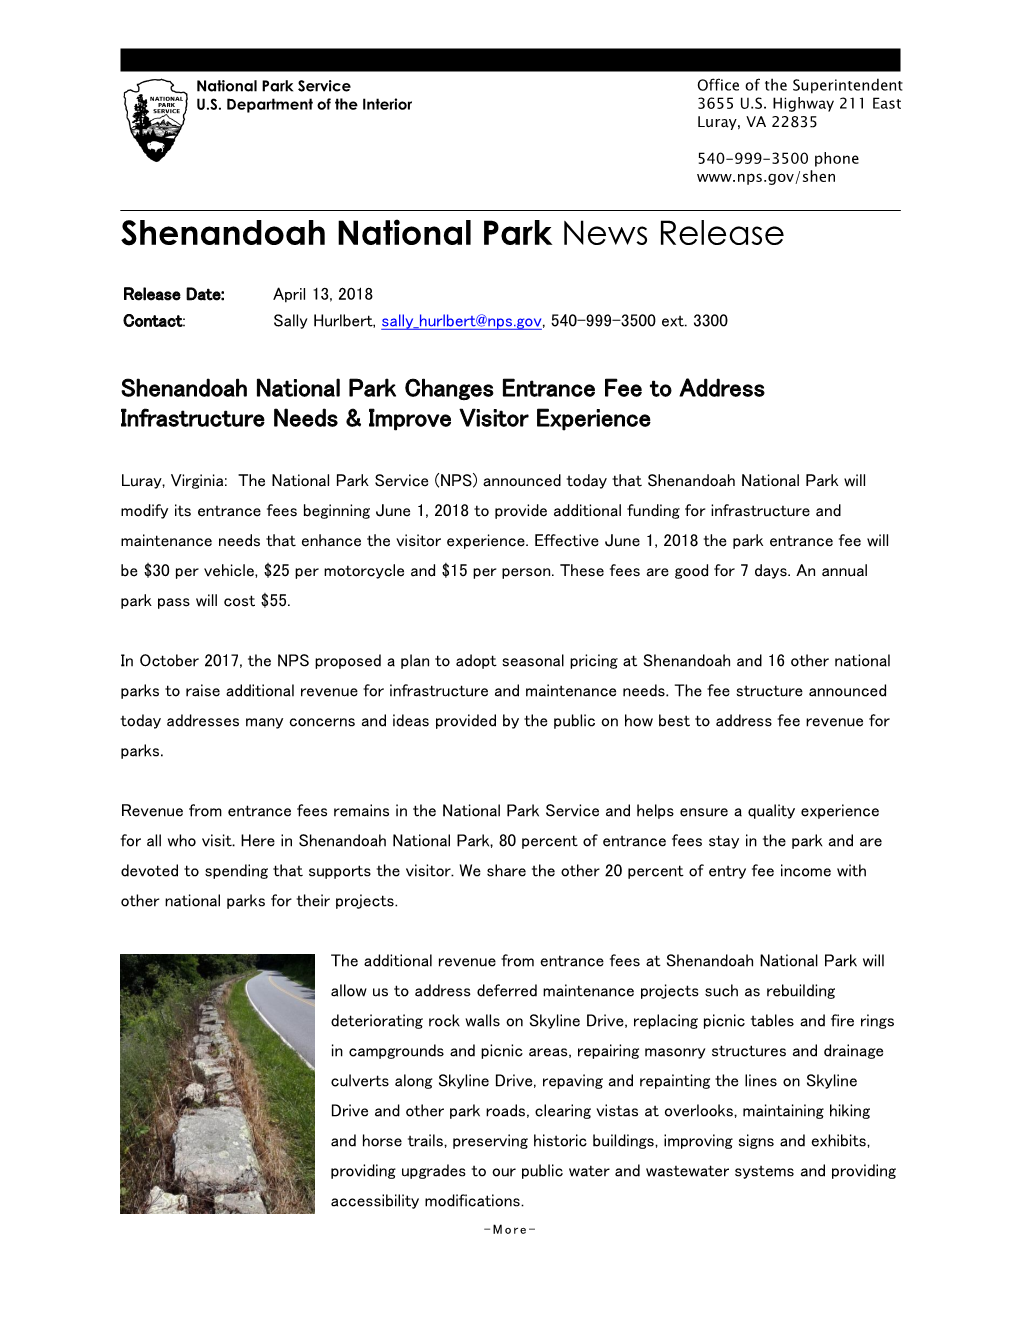 Full Press Release of Shenandoah National Park Changes Entrance